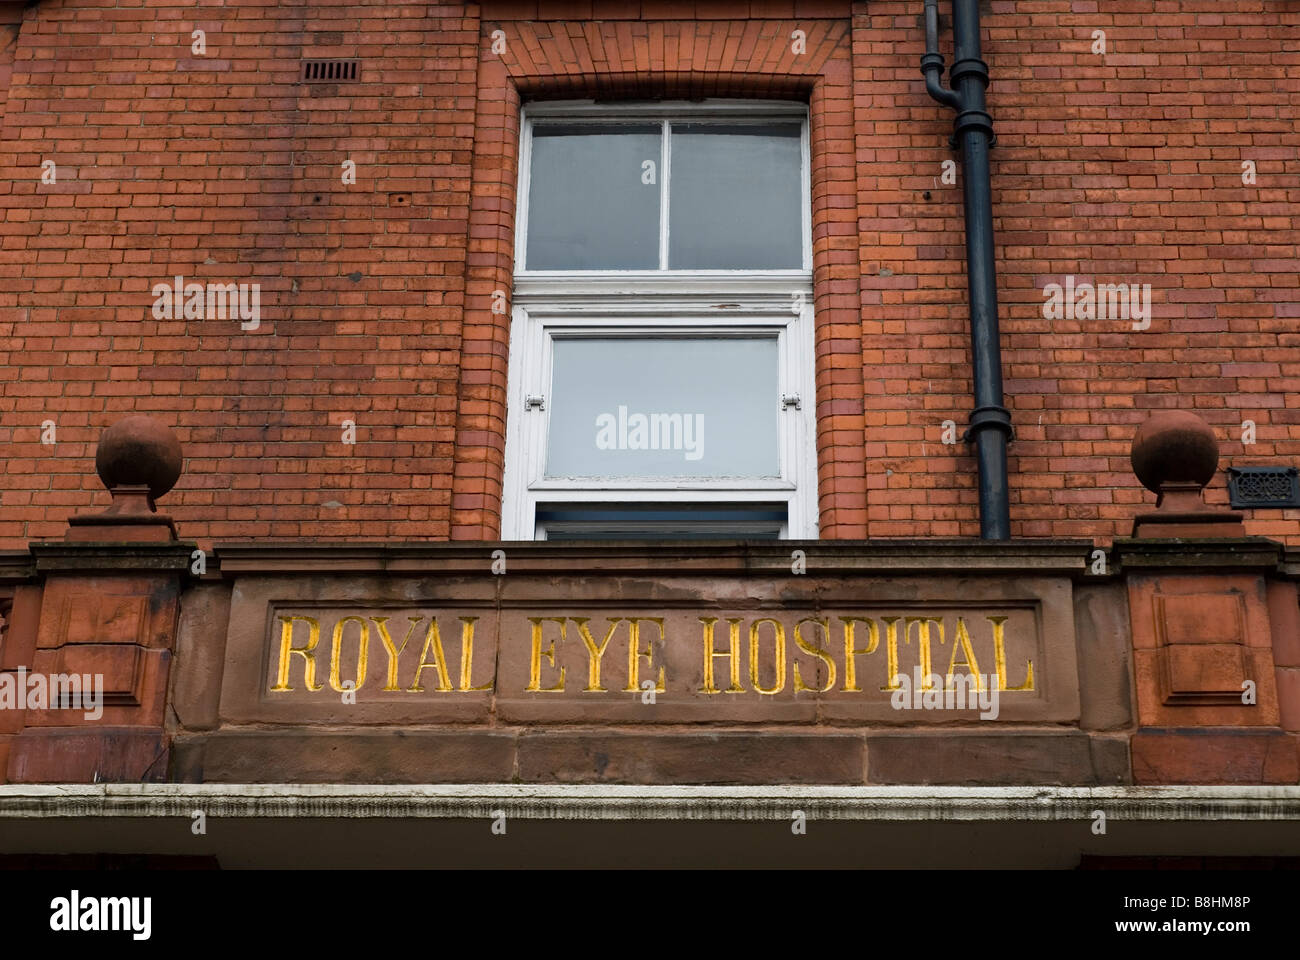 Königliche Augenklinik Manchester UK Stockfoto